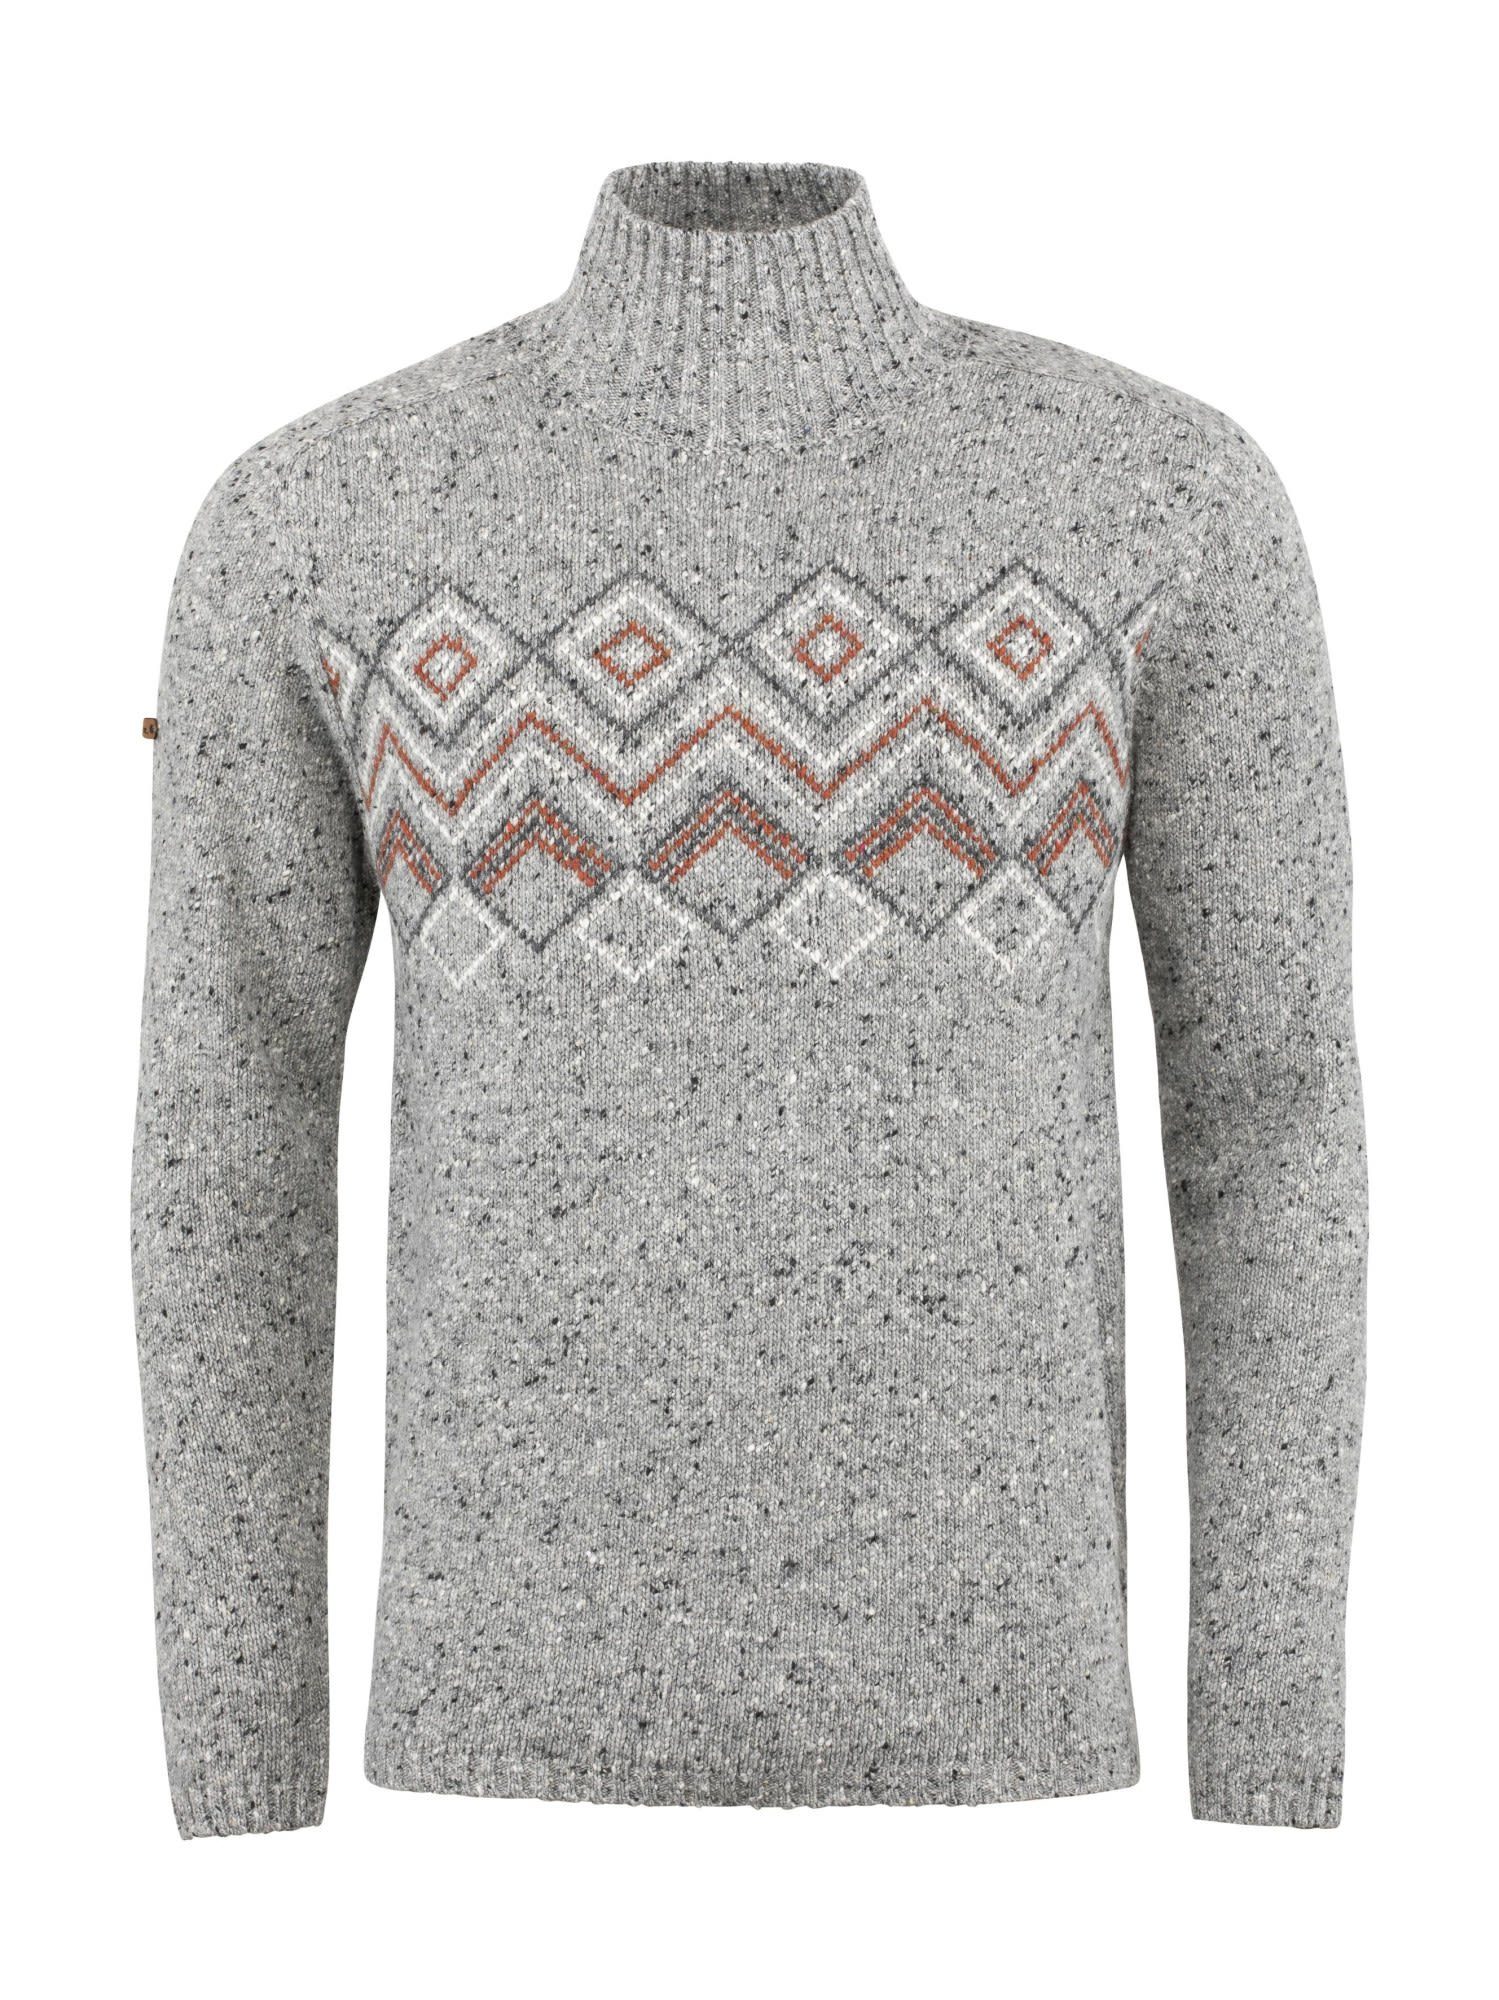 Chillaz Grey Fleecepullover Melange Herren M Chillaz Sweater Selfoss